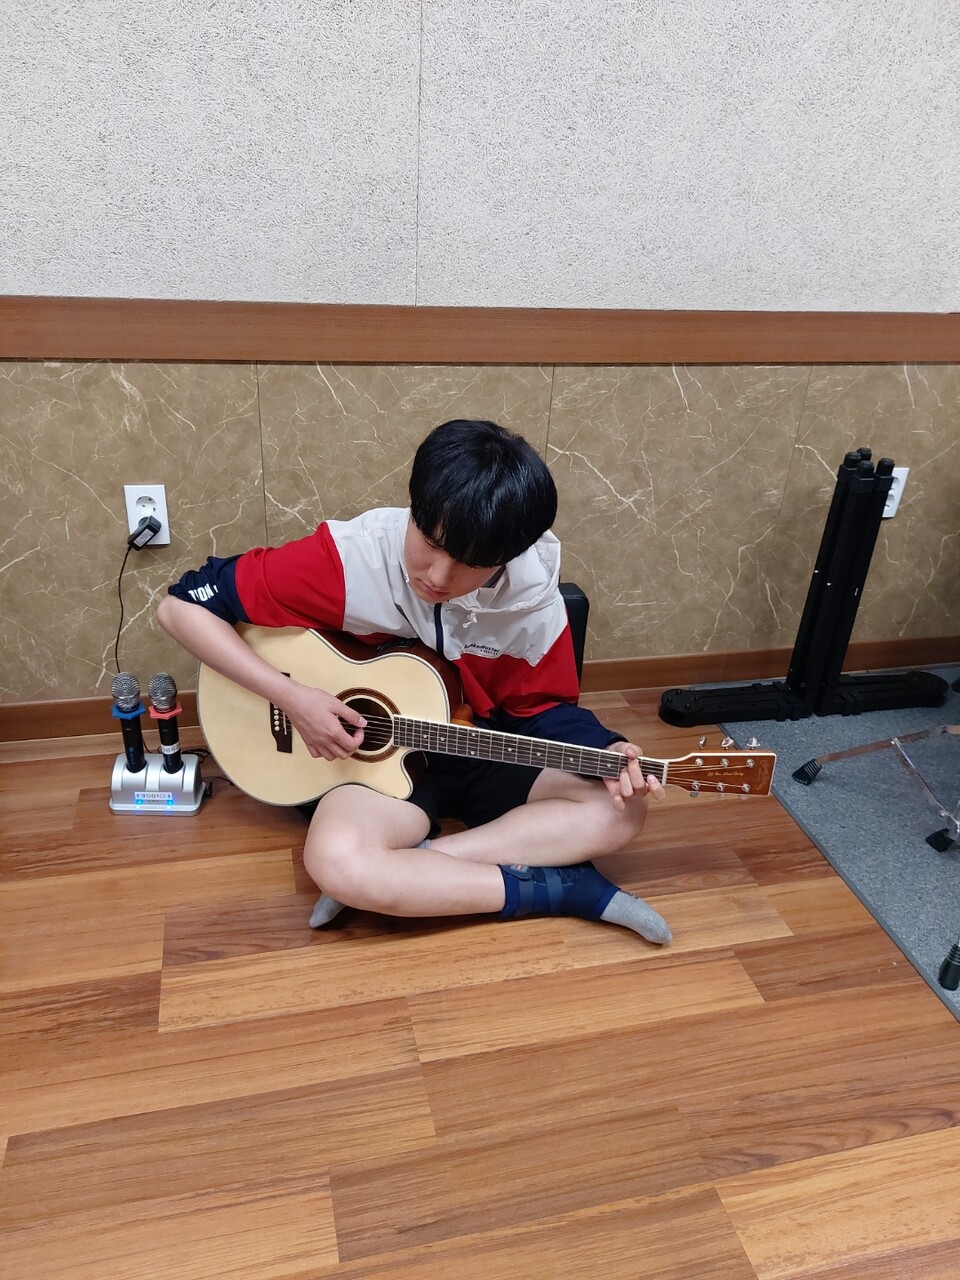 자기성장 프로젝트 시간에 기타를 연습하는 종윤이 , 요즘은 명진샘에게 기타를 가르쳐 주기도 한다. 